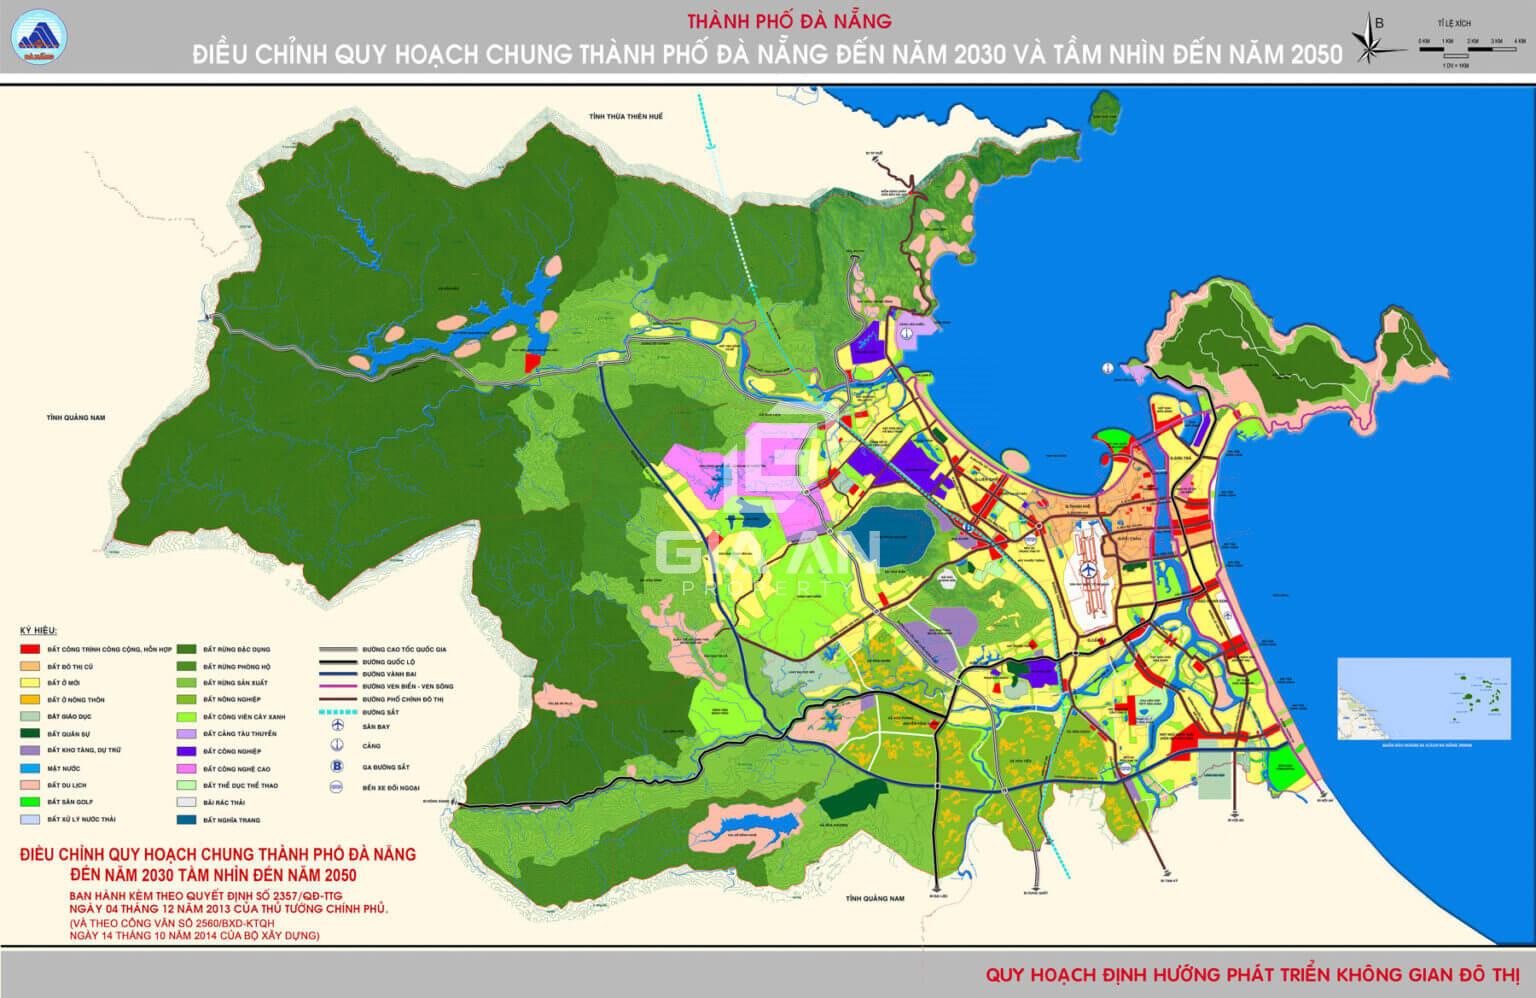 Quy hoạch định hướng phát triển không gian đô thị TP Đà Nẵng